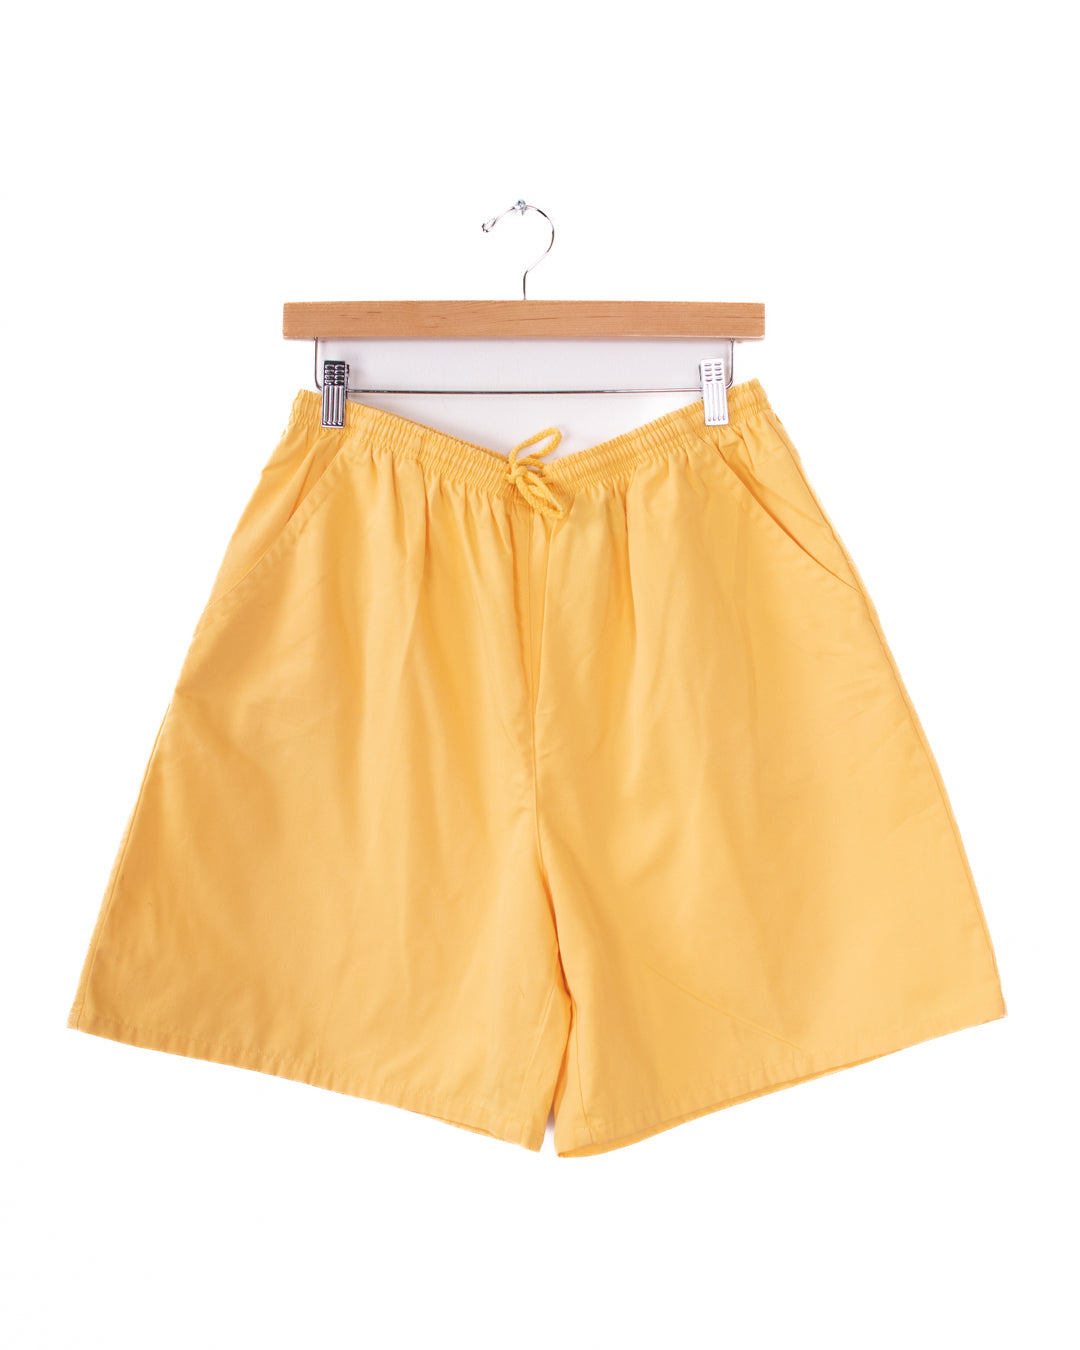 Paradise Day Petites Elastic Waist Yellow Shorts